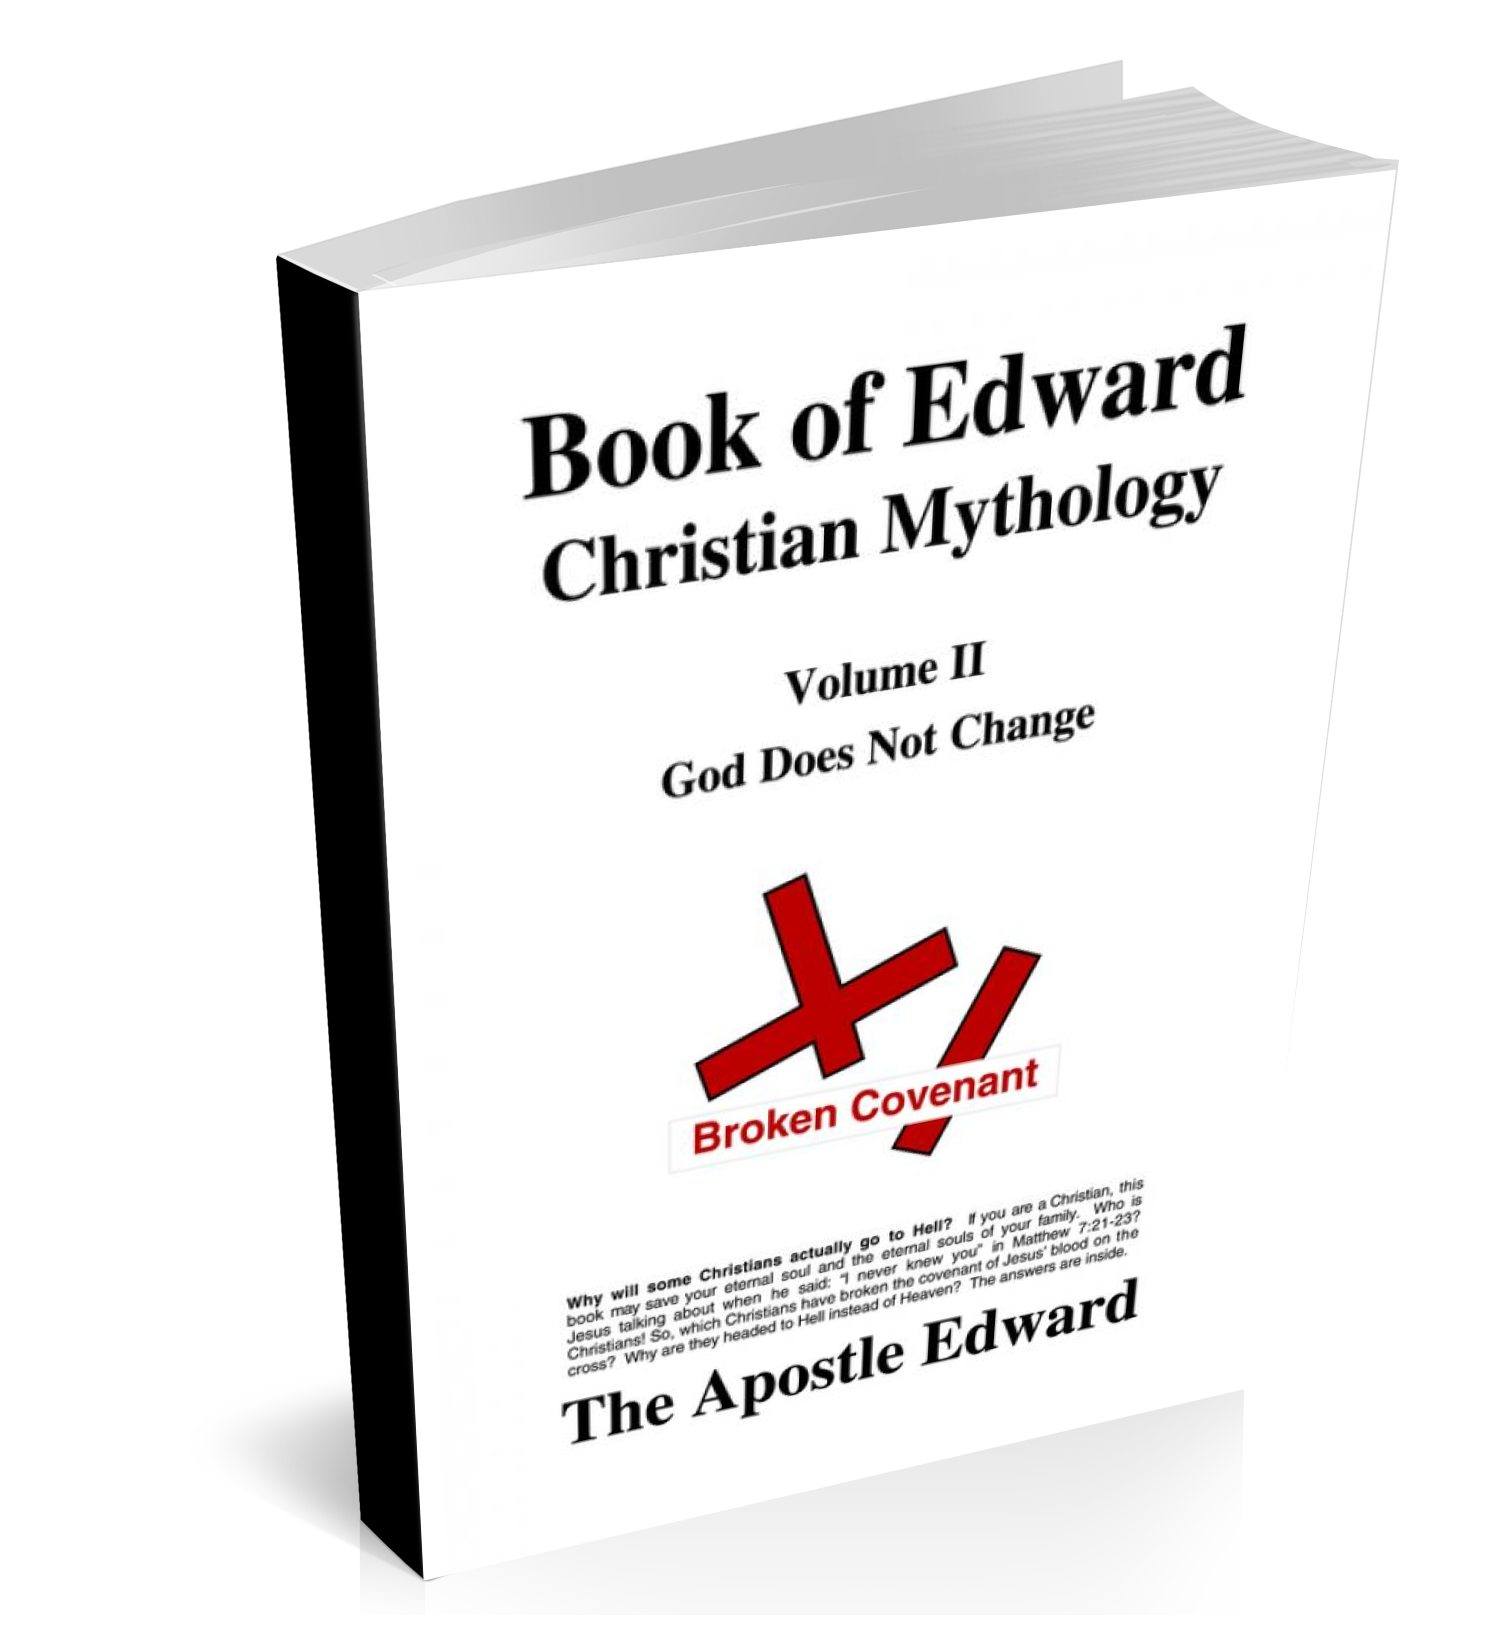 Image of Apostle Edward's Book of Edward Volume I